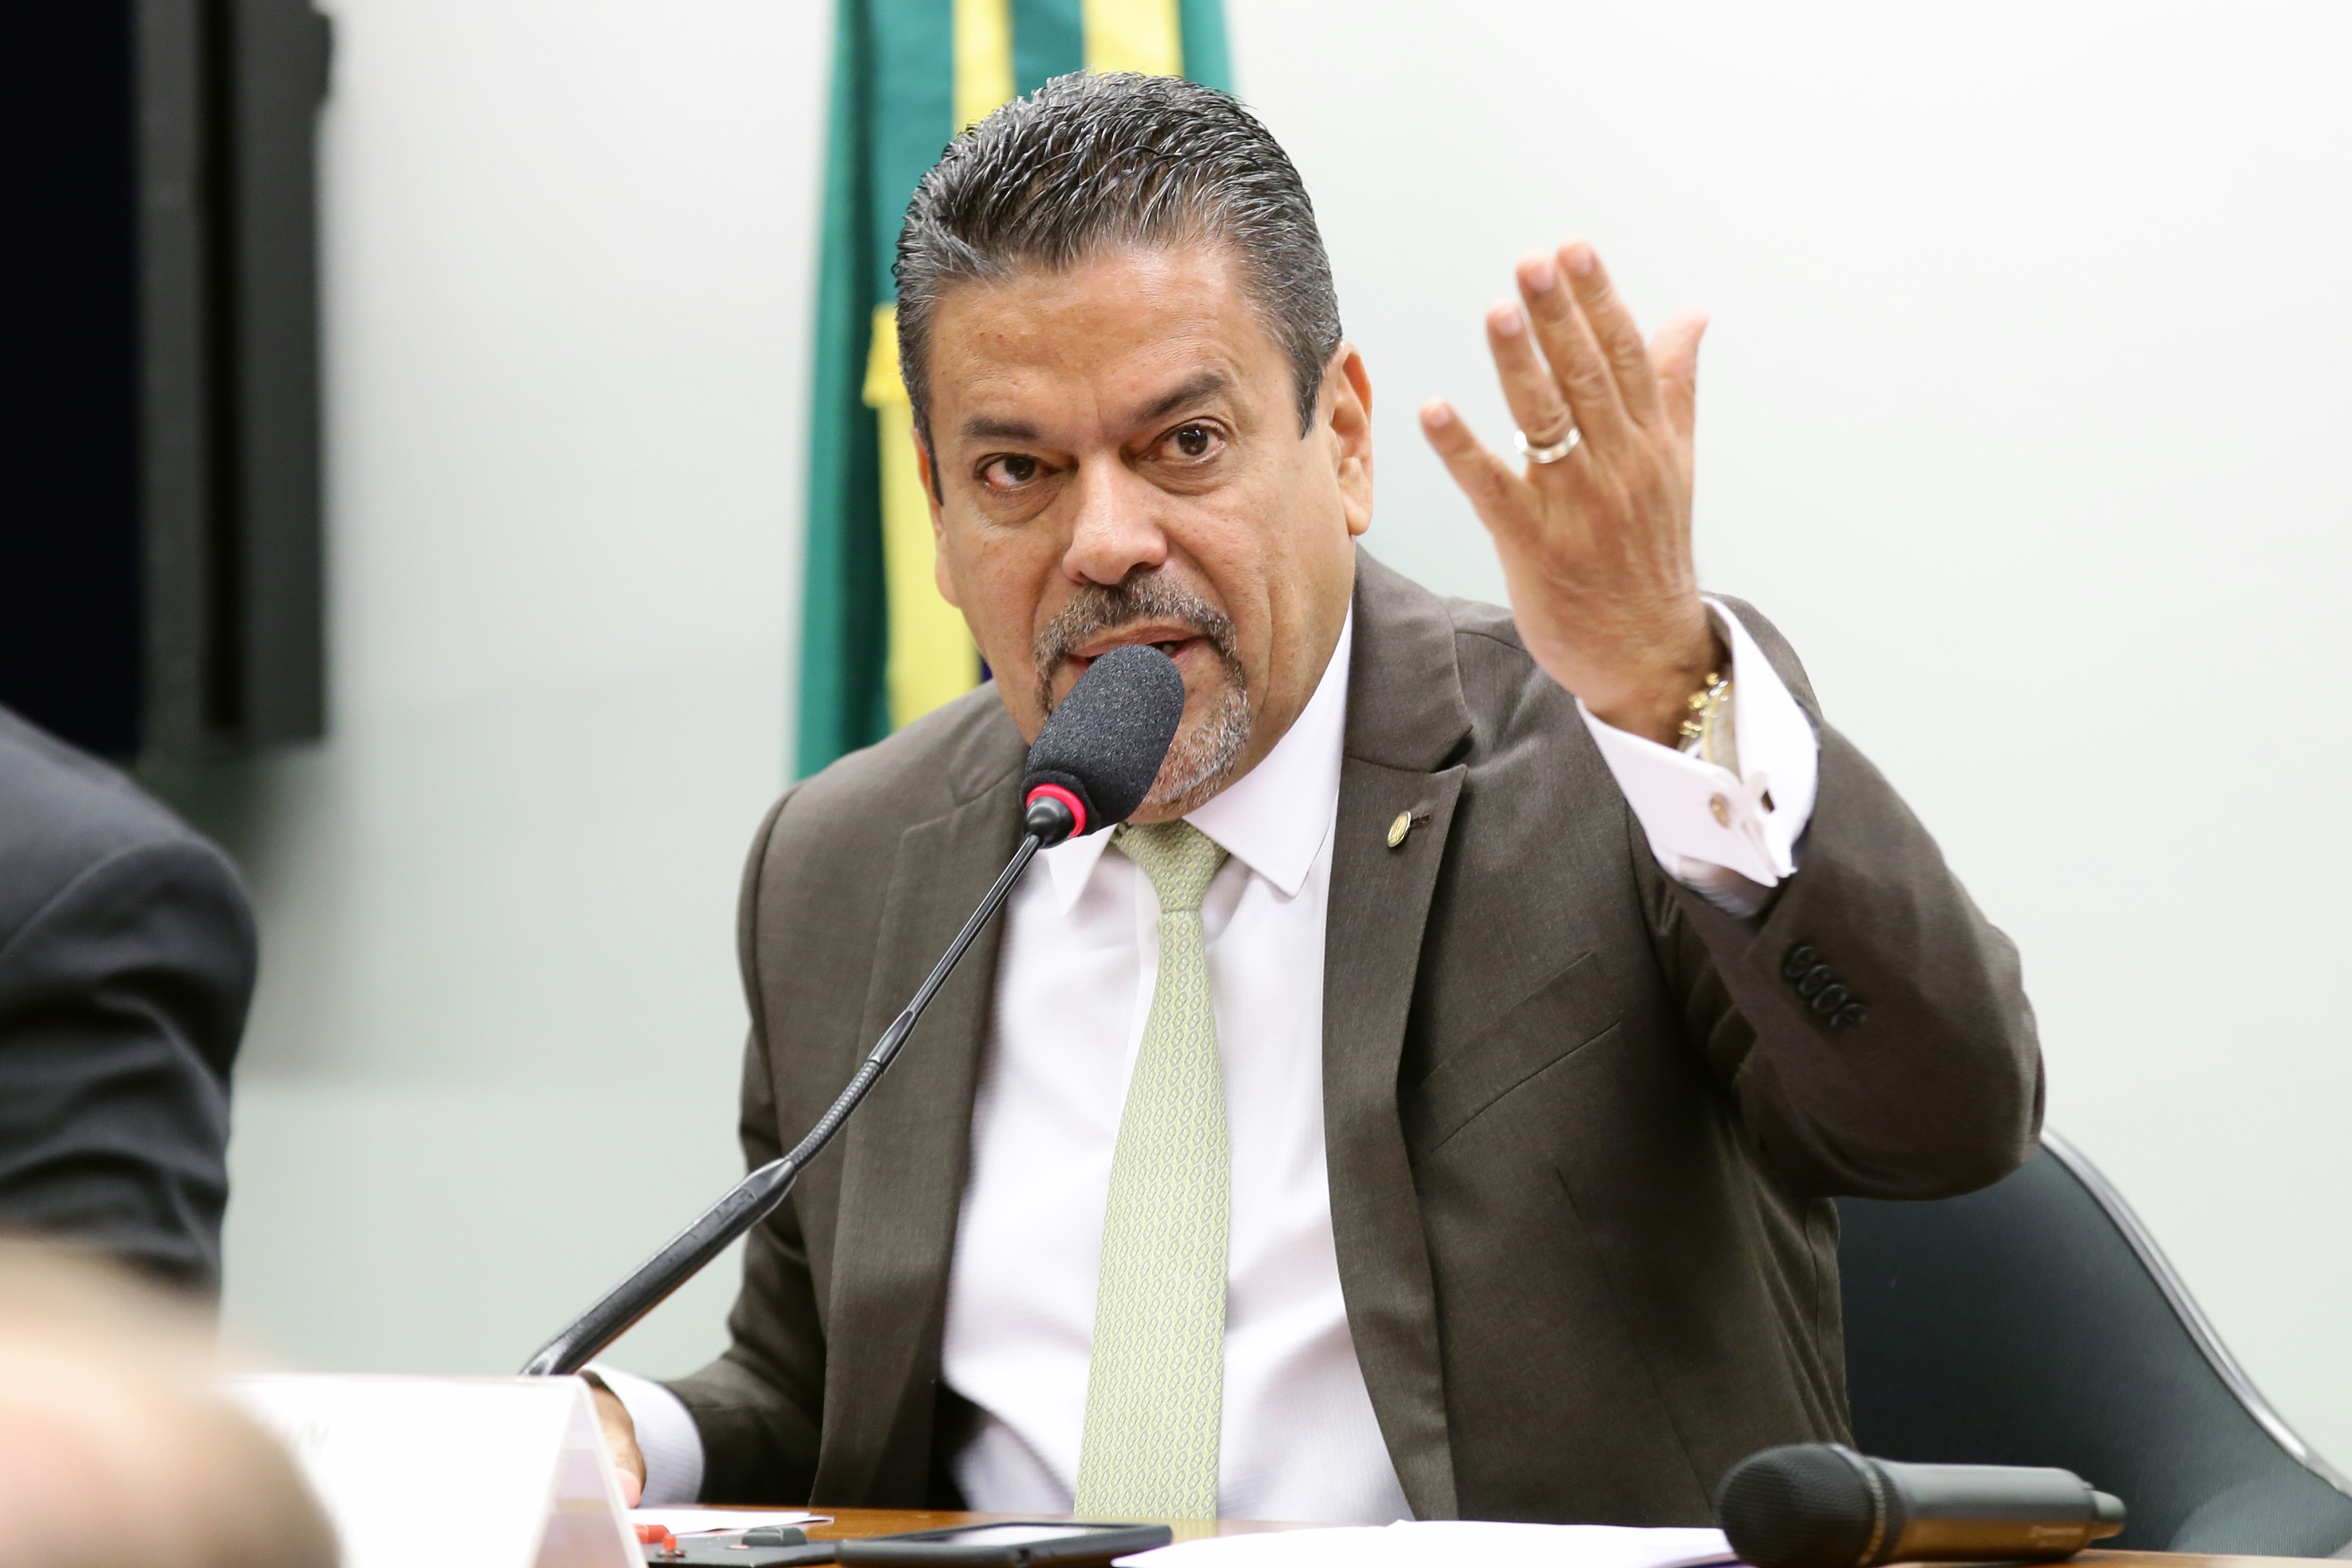 Najara Araujo/Câmara dos Deputados / Bancadas de Roraima, Amapá e Rondônia. Dep. Hiran Gonçalves (PP - RR)Hiran Gonçalves defende a criação de exigências curriculares mínimas